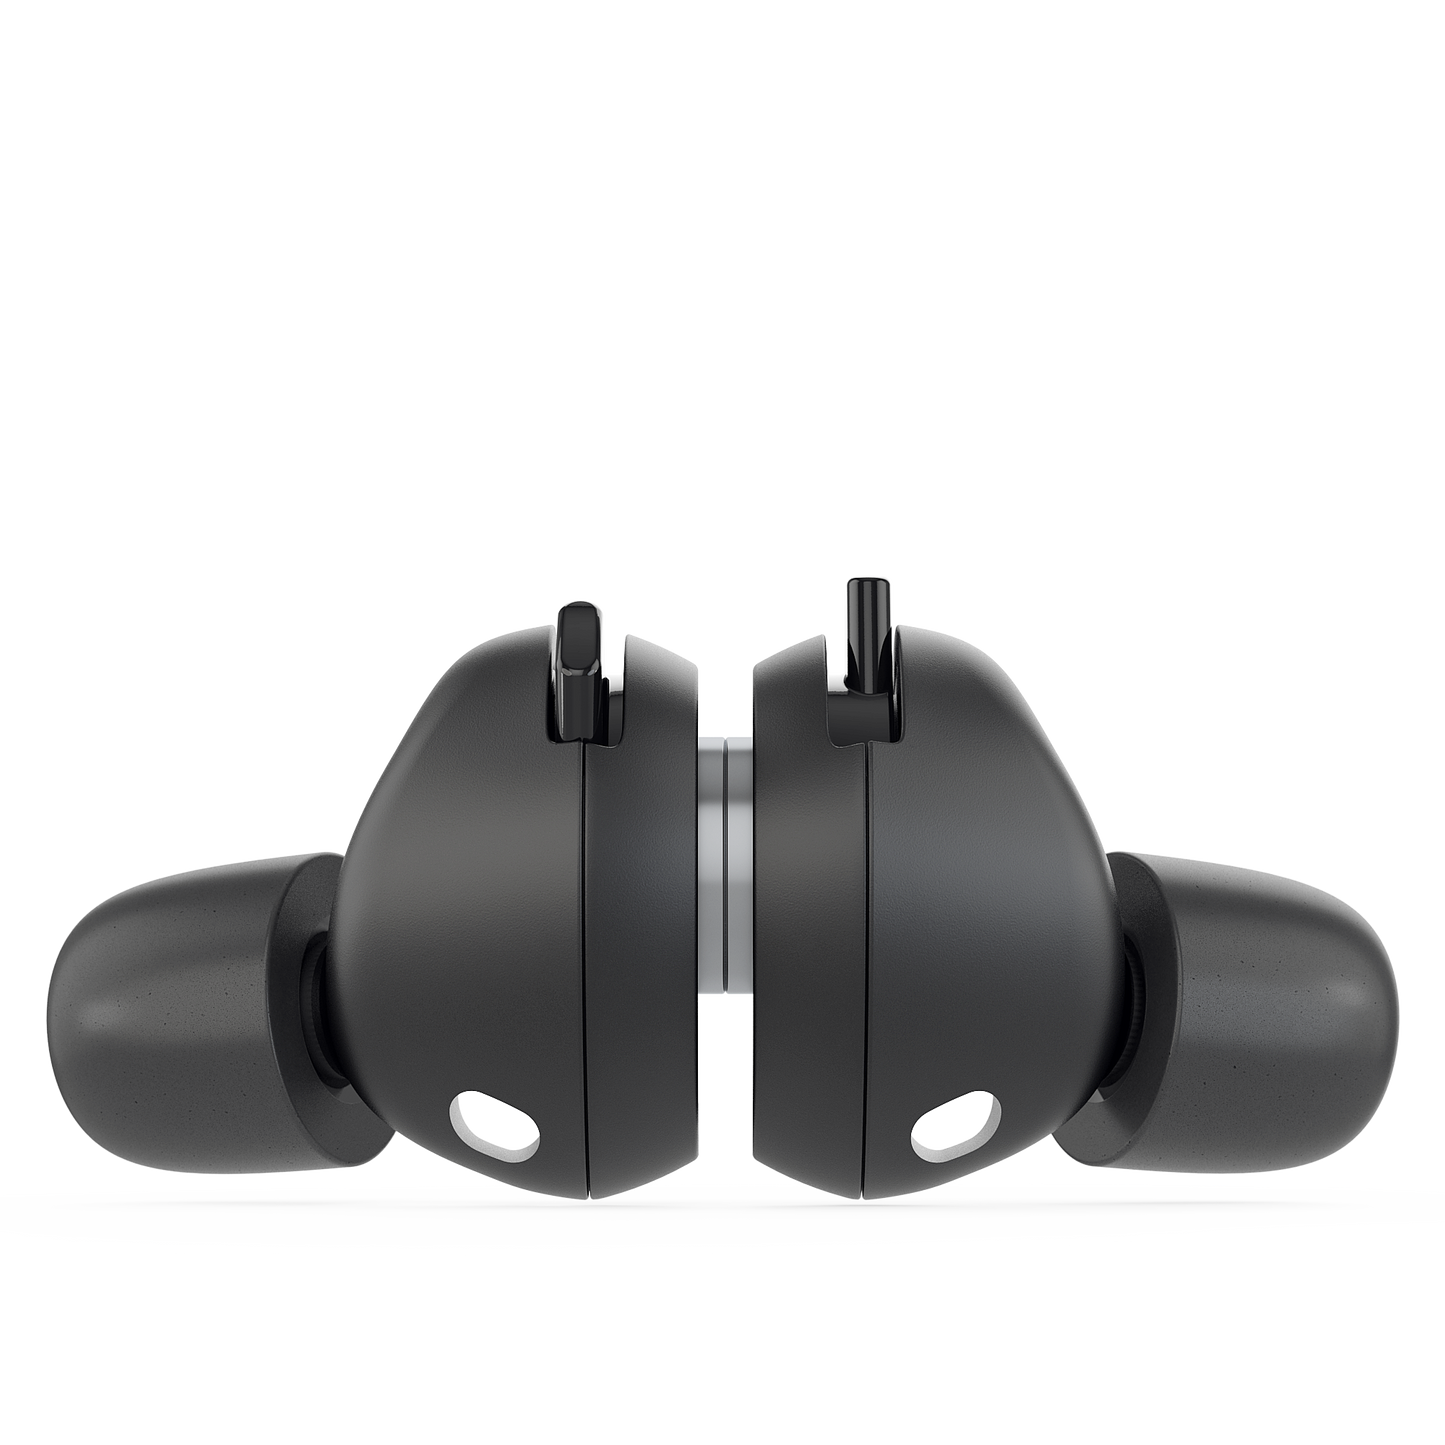 Adjustable earplugs